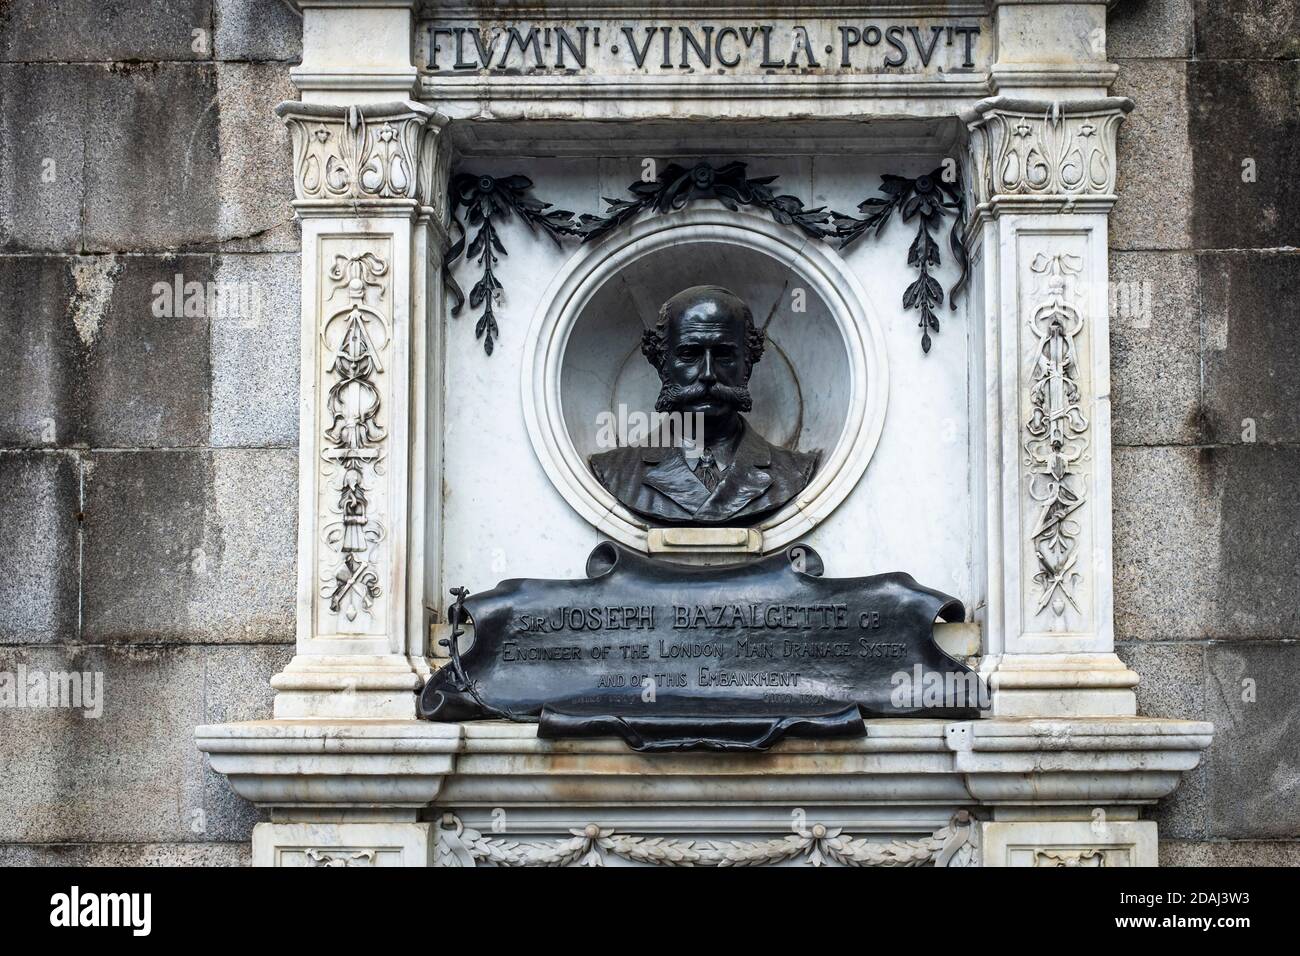 Busto Memorial y placa incrustada en la pared del terraplén, en conmemoración de Sir Joseph Bazalgette, ingeniero del sistema principal de drenaje de Londres. Foto de stock